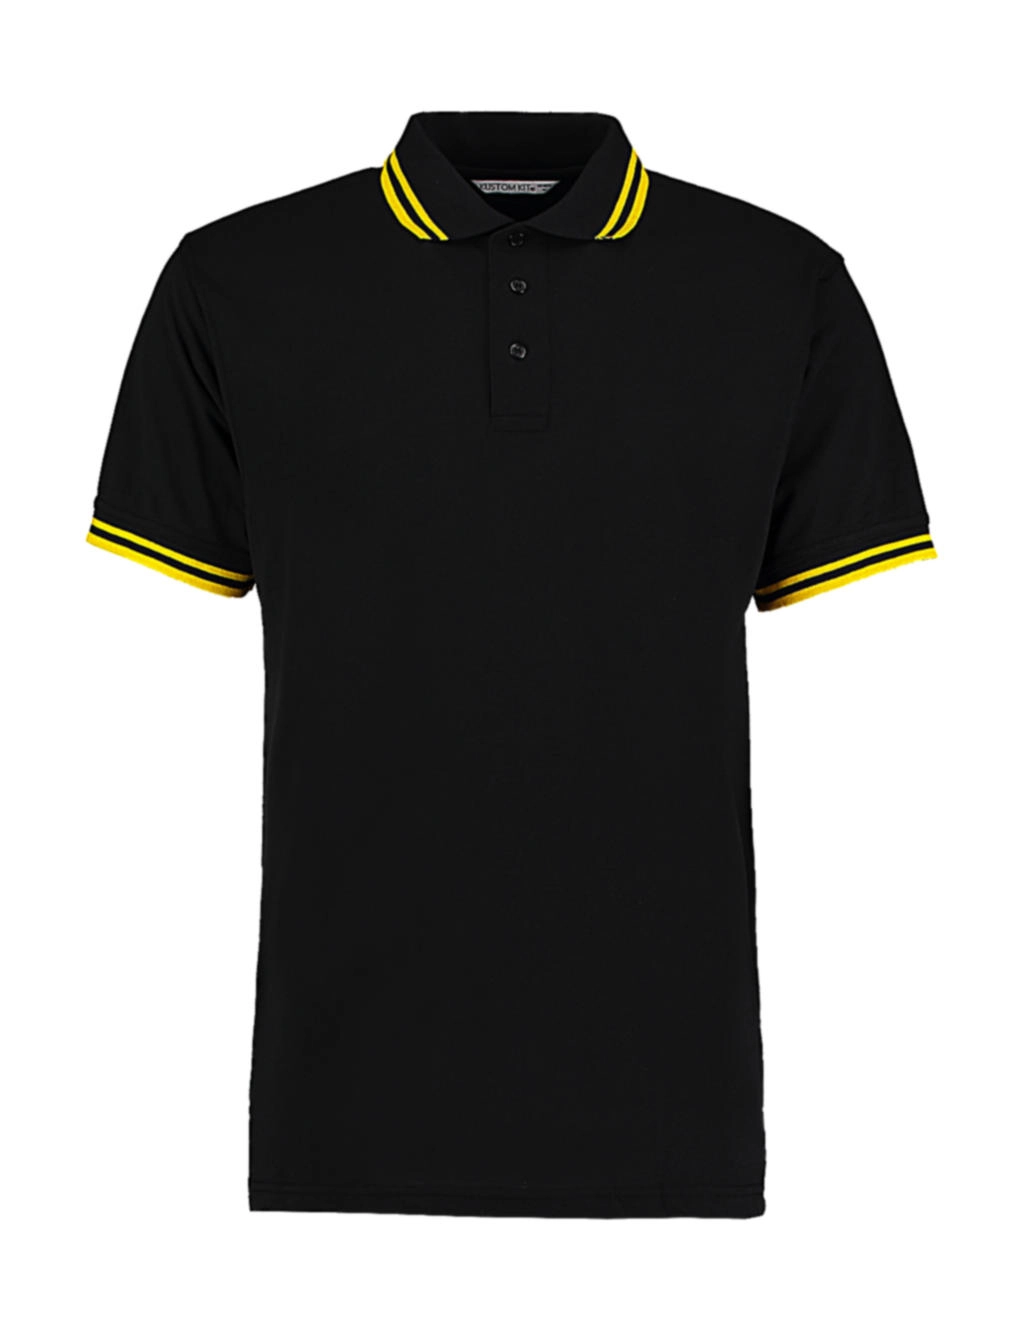 Classic Fit Tipped Collar Polo zum Besticken und Bedrucken in der Farbe Black/Yellow mit Ihren Logo, Schriftzug oder Motiv.